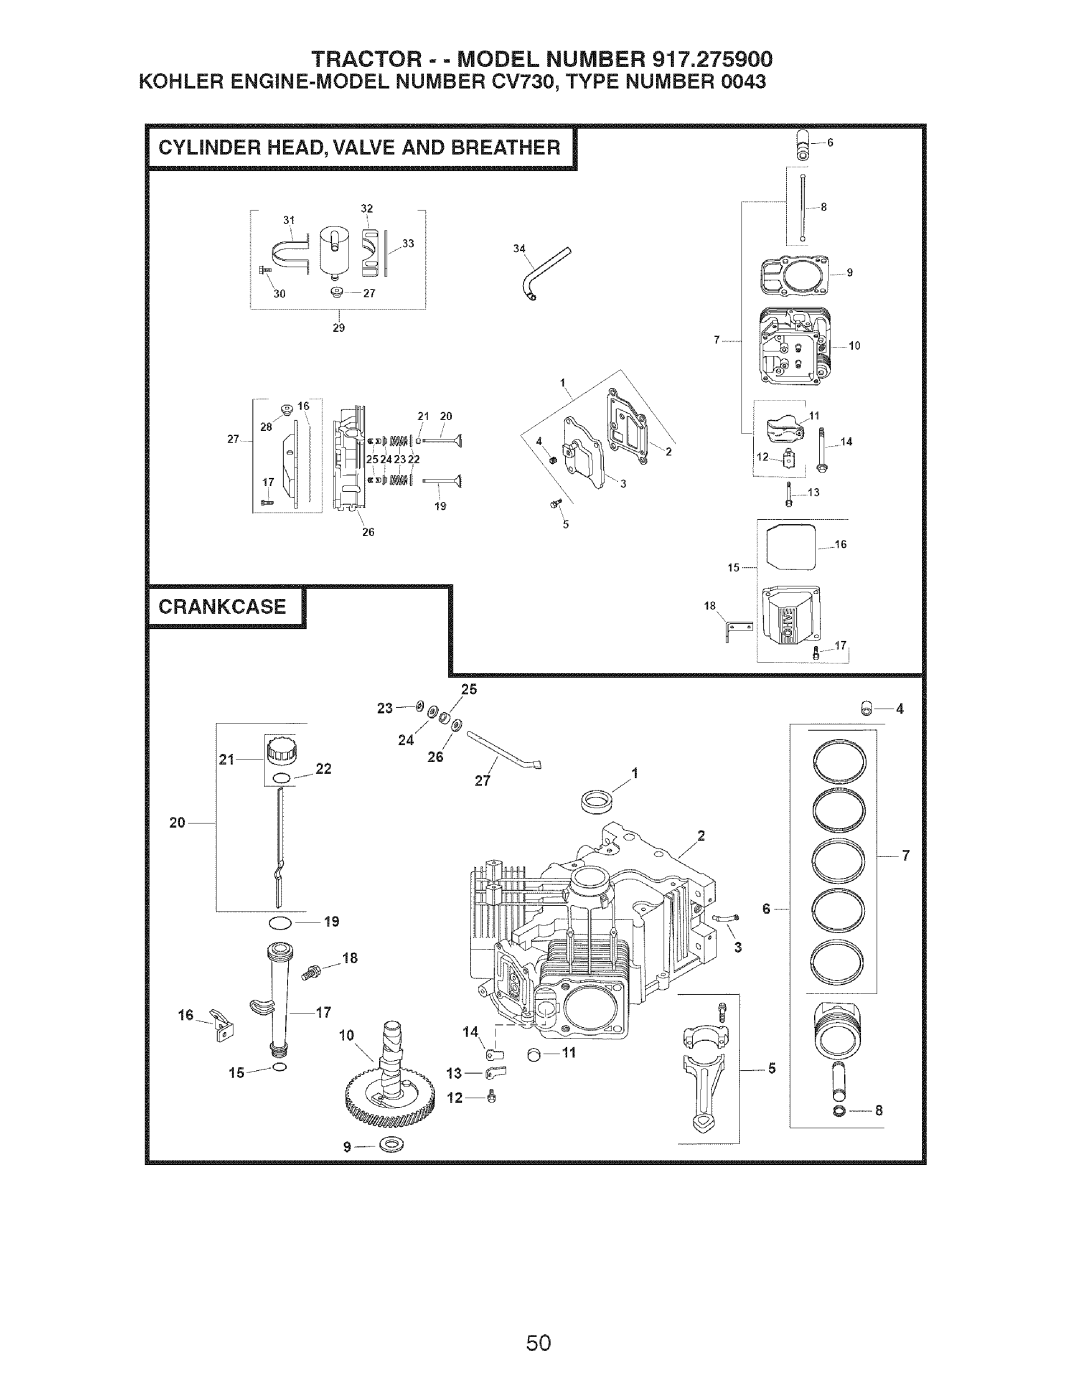 Craftsman 917.2759 manual Tractor = = Model Number, KOHLER ENGINE=MODEL NUMBER CV730, TYPE NUMBER 